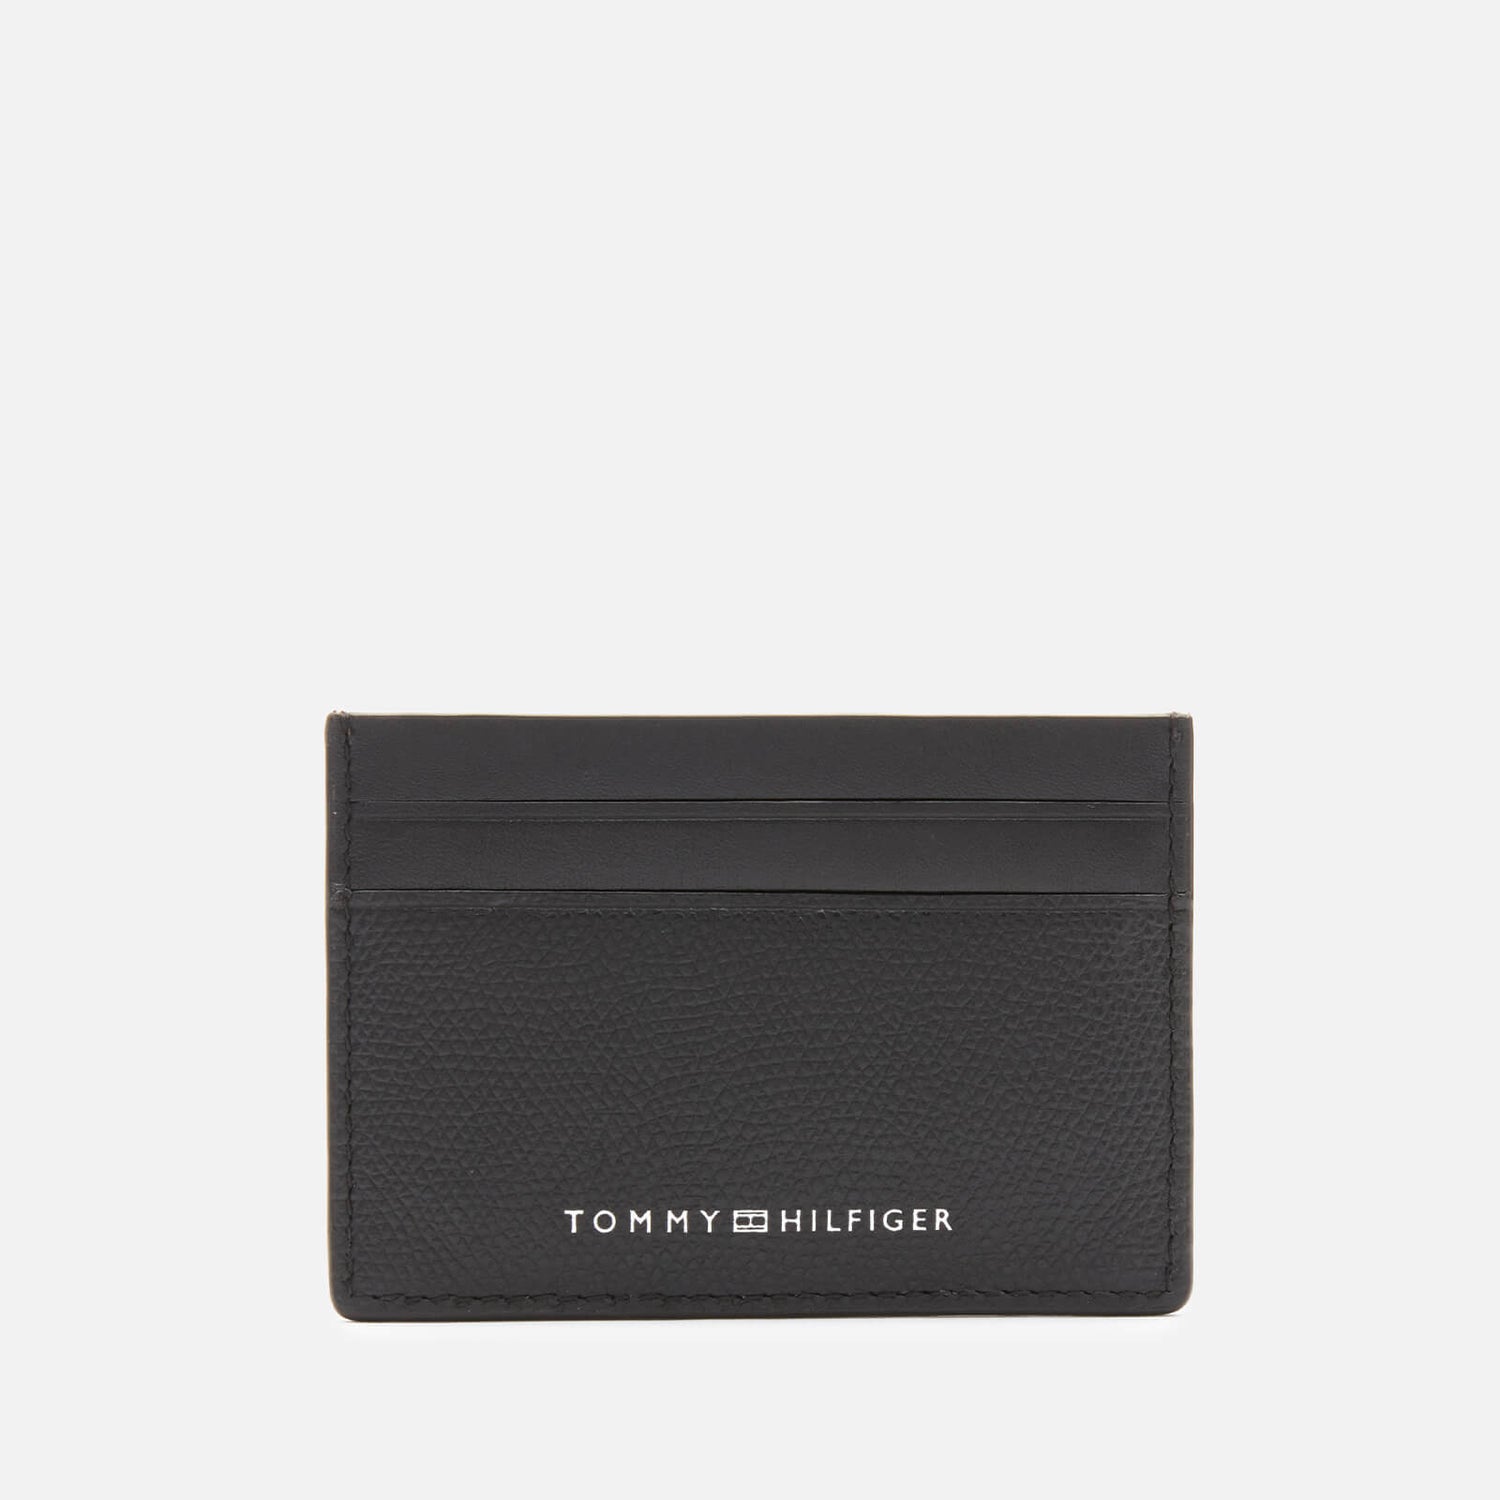 Tommy Hilfiger Men's Business Credit Card Holder - Black